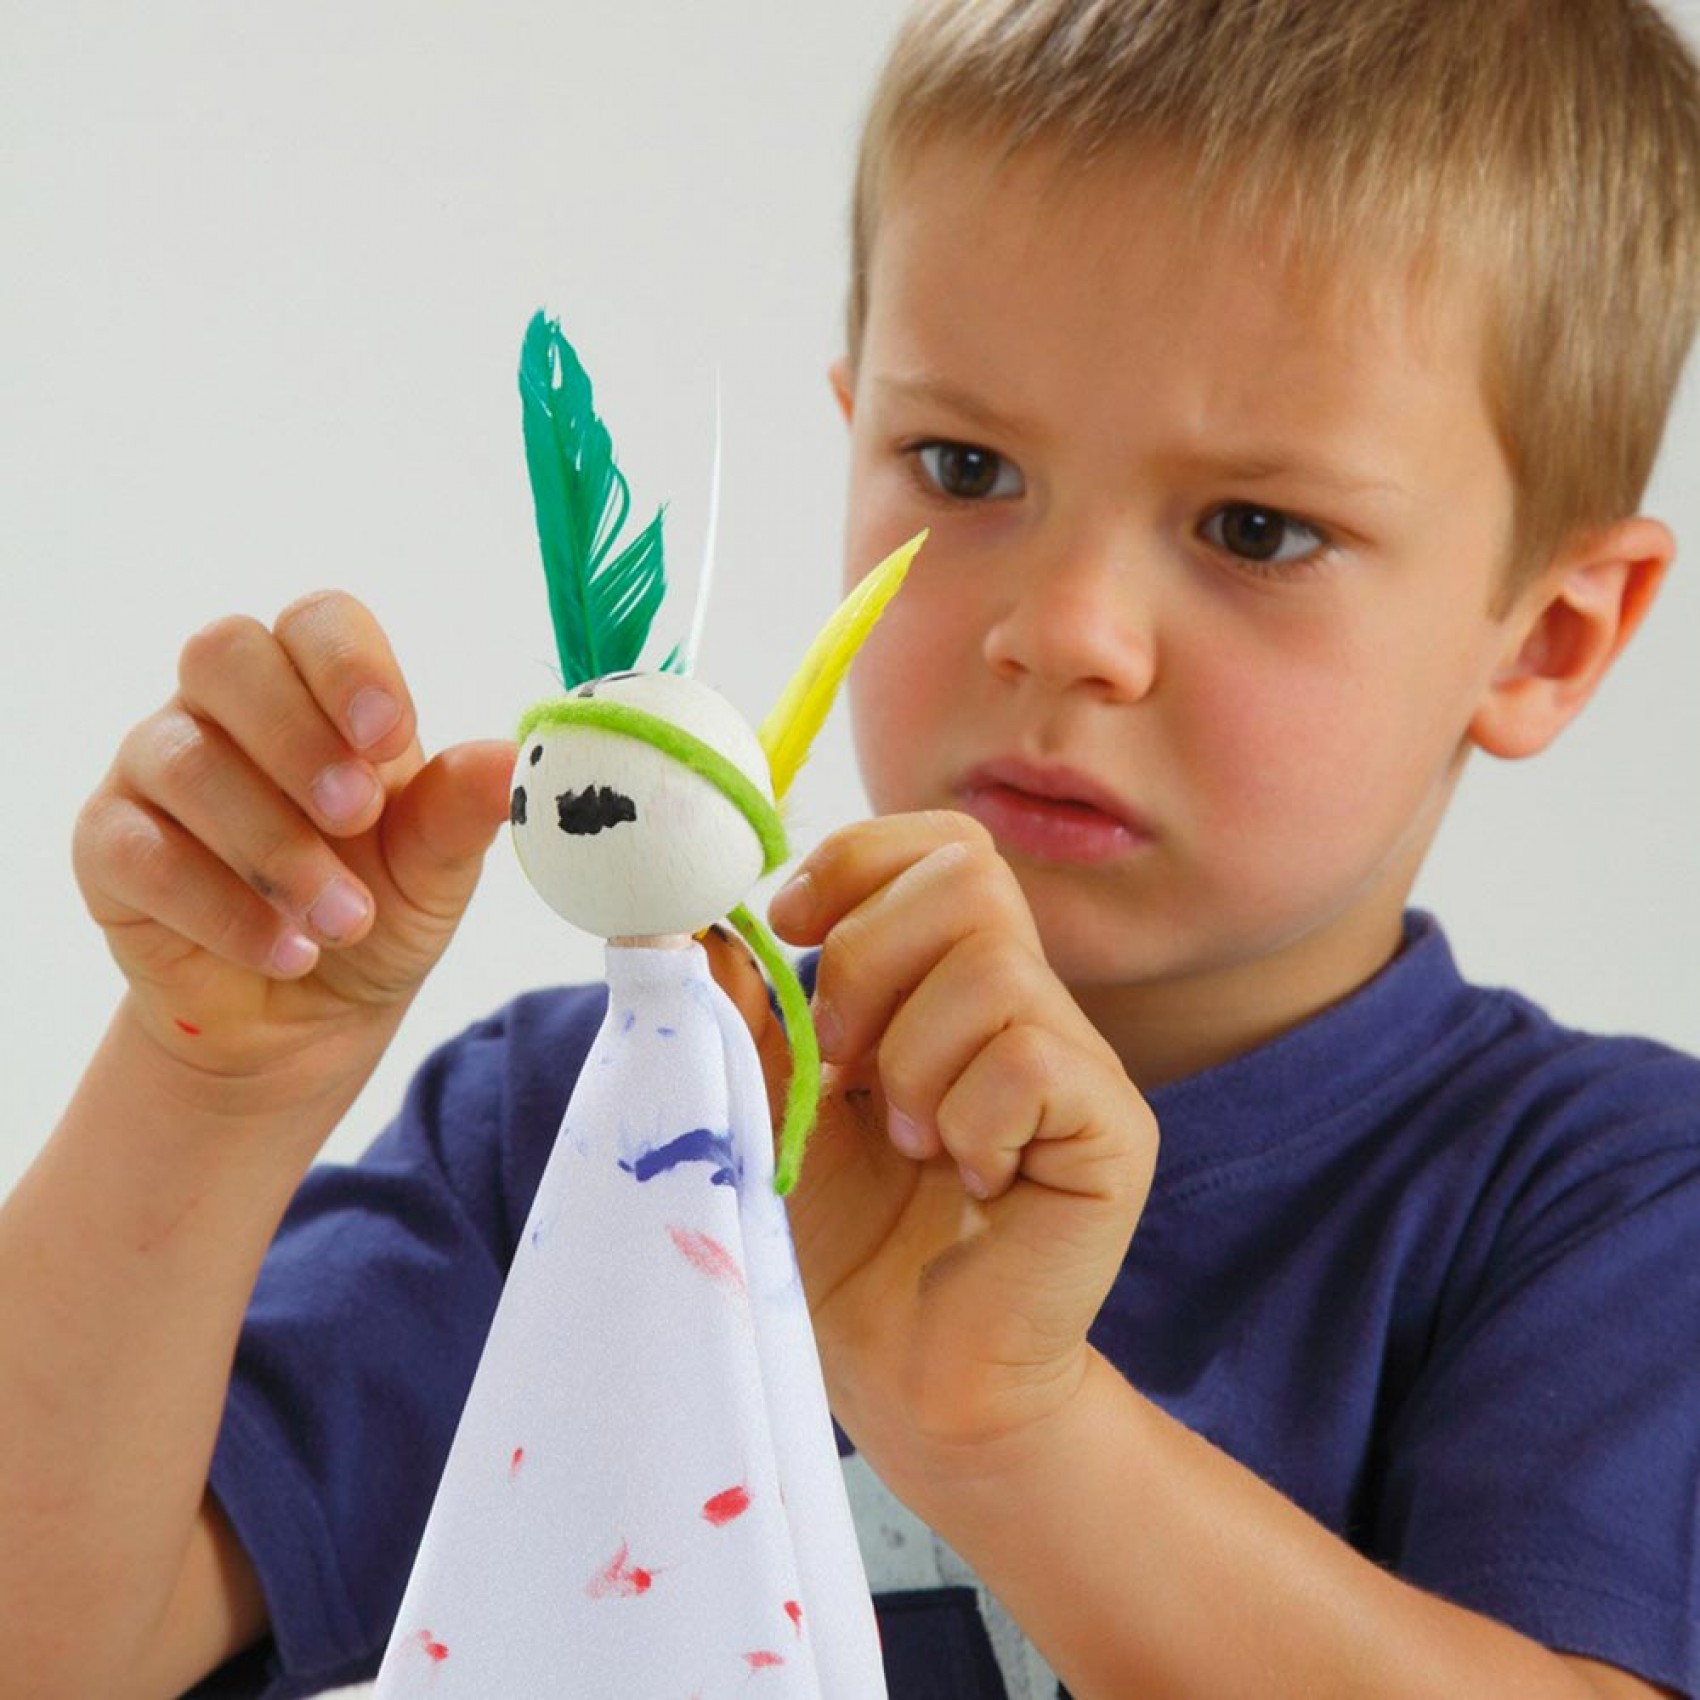 Kit de loisirs créatifs enfants création de marionnettes